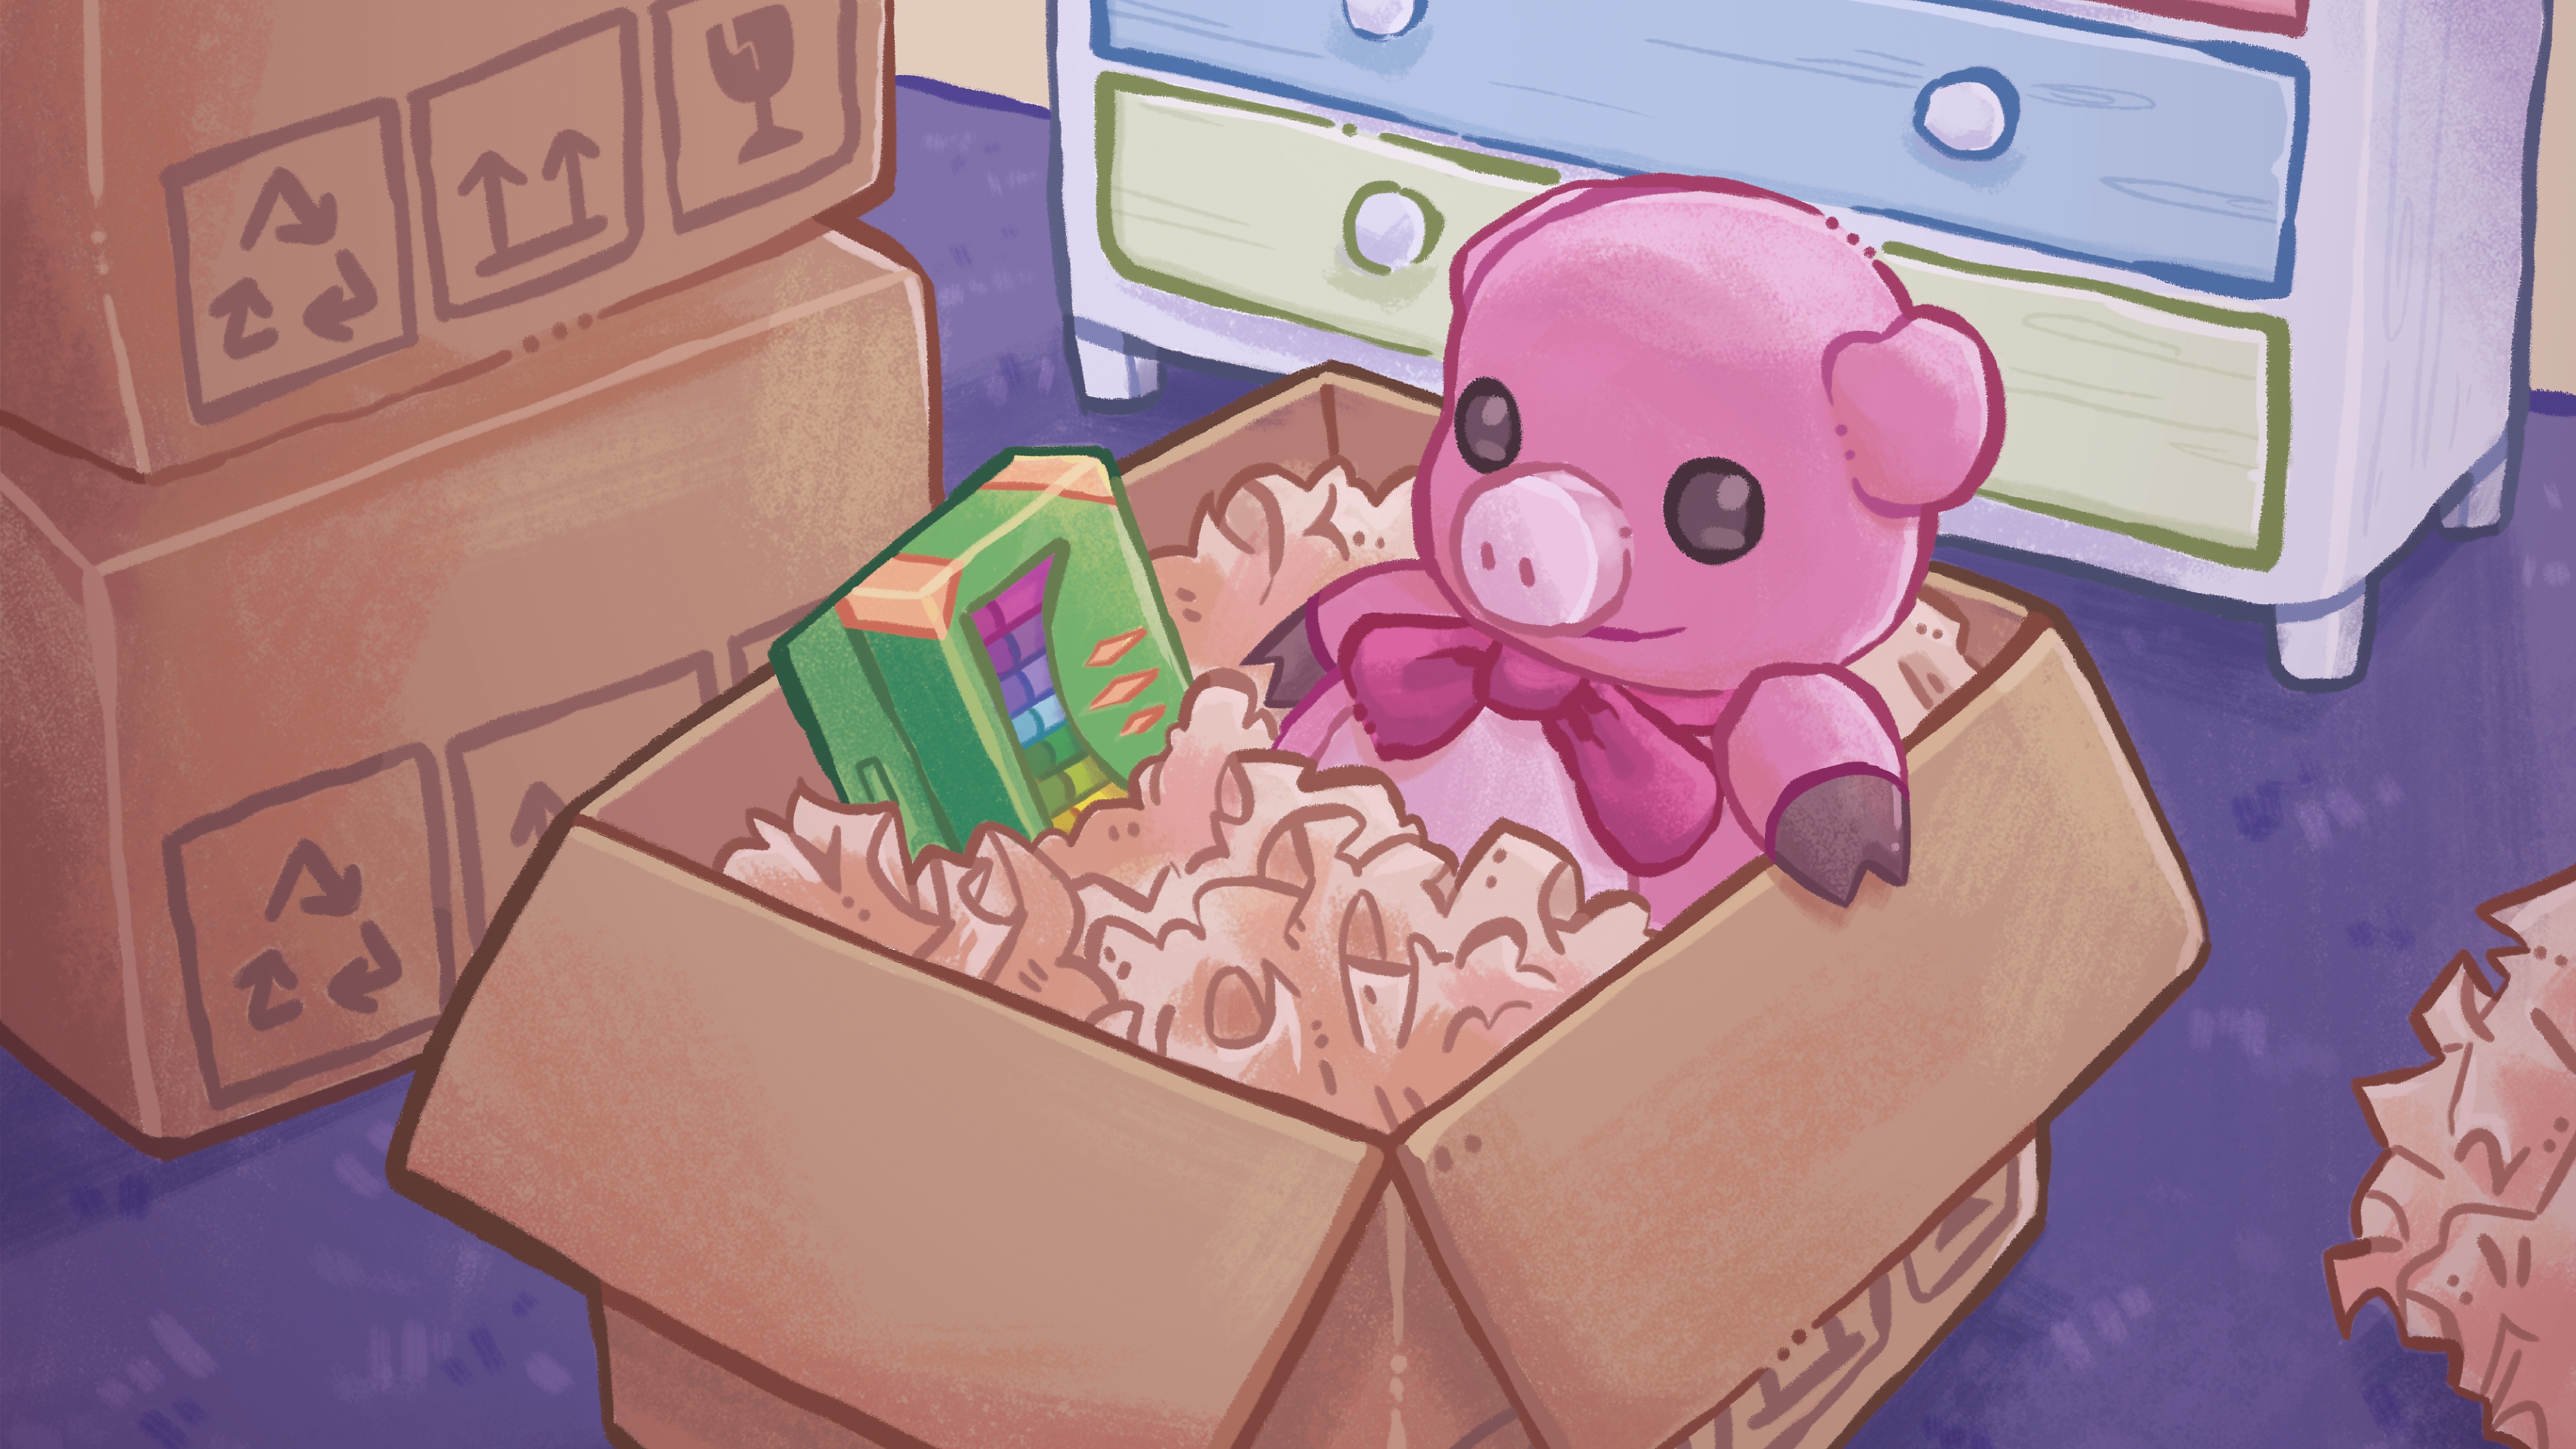 Unpacking - Illustration principale montrant une illustration colorée dessinée à la main d'un ours en peluche et d'une boîte de crayons de couleur dans une boîte en carton.